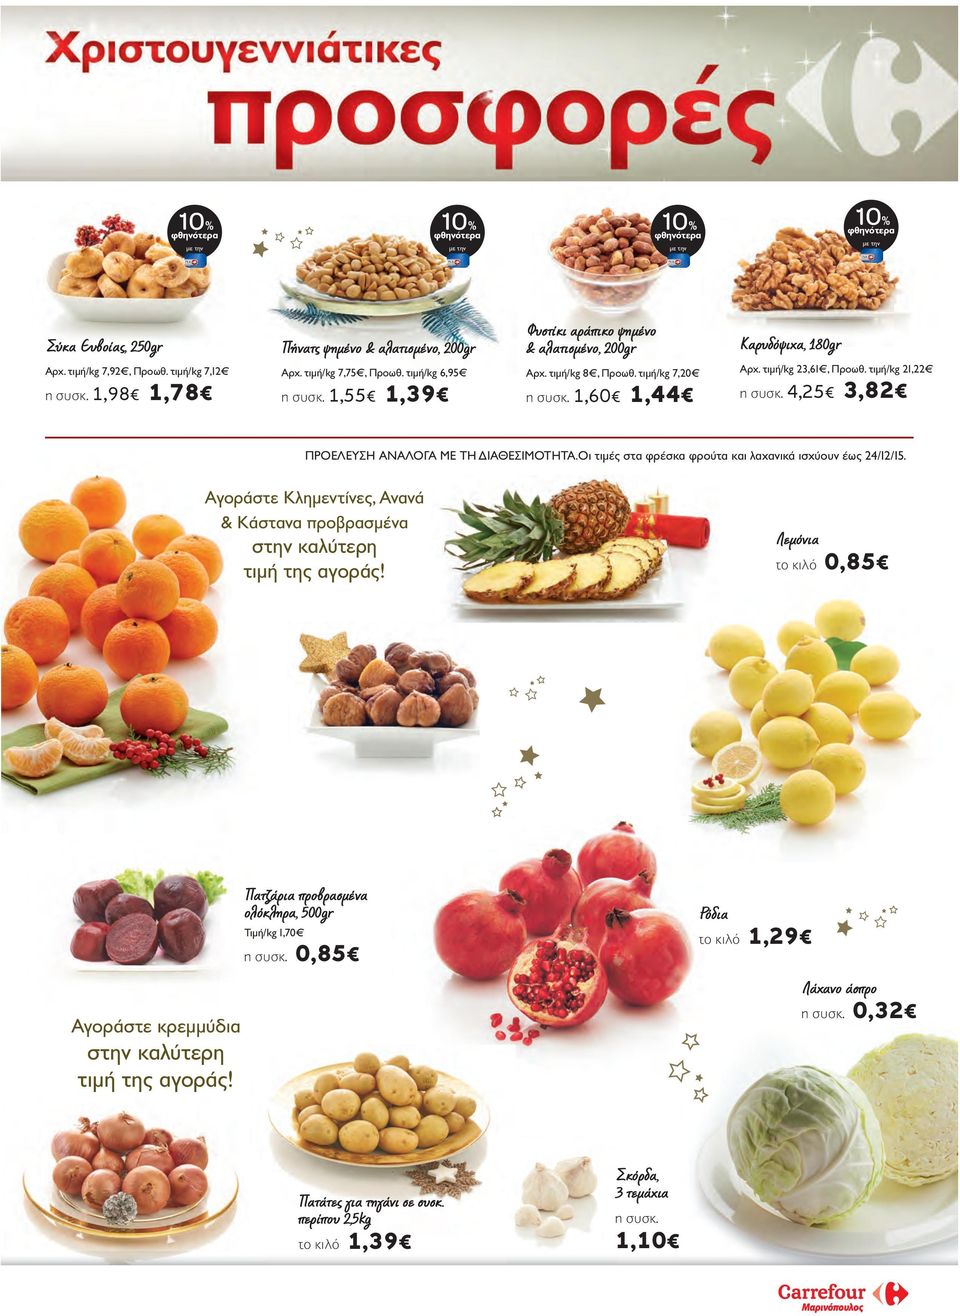 4,25 3,82 ΠΡΟΕΛΕΥΣΗ ΑΝΑΛΟΓΑ ΜΕ ΤΗ ΔΙΑΘΕΣΙΜΟΤΗΤΑ.Oι τιμές στα φρέσκα φρούτα και λαχανικά ισχύουν έως 24/12/15. Aγοράστε Κλημεντίνες, Ανανά & Κάστανα προβρασμένα στην καλύτερη τιμή της αγοράς!